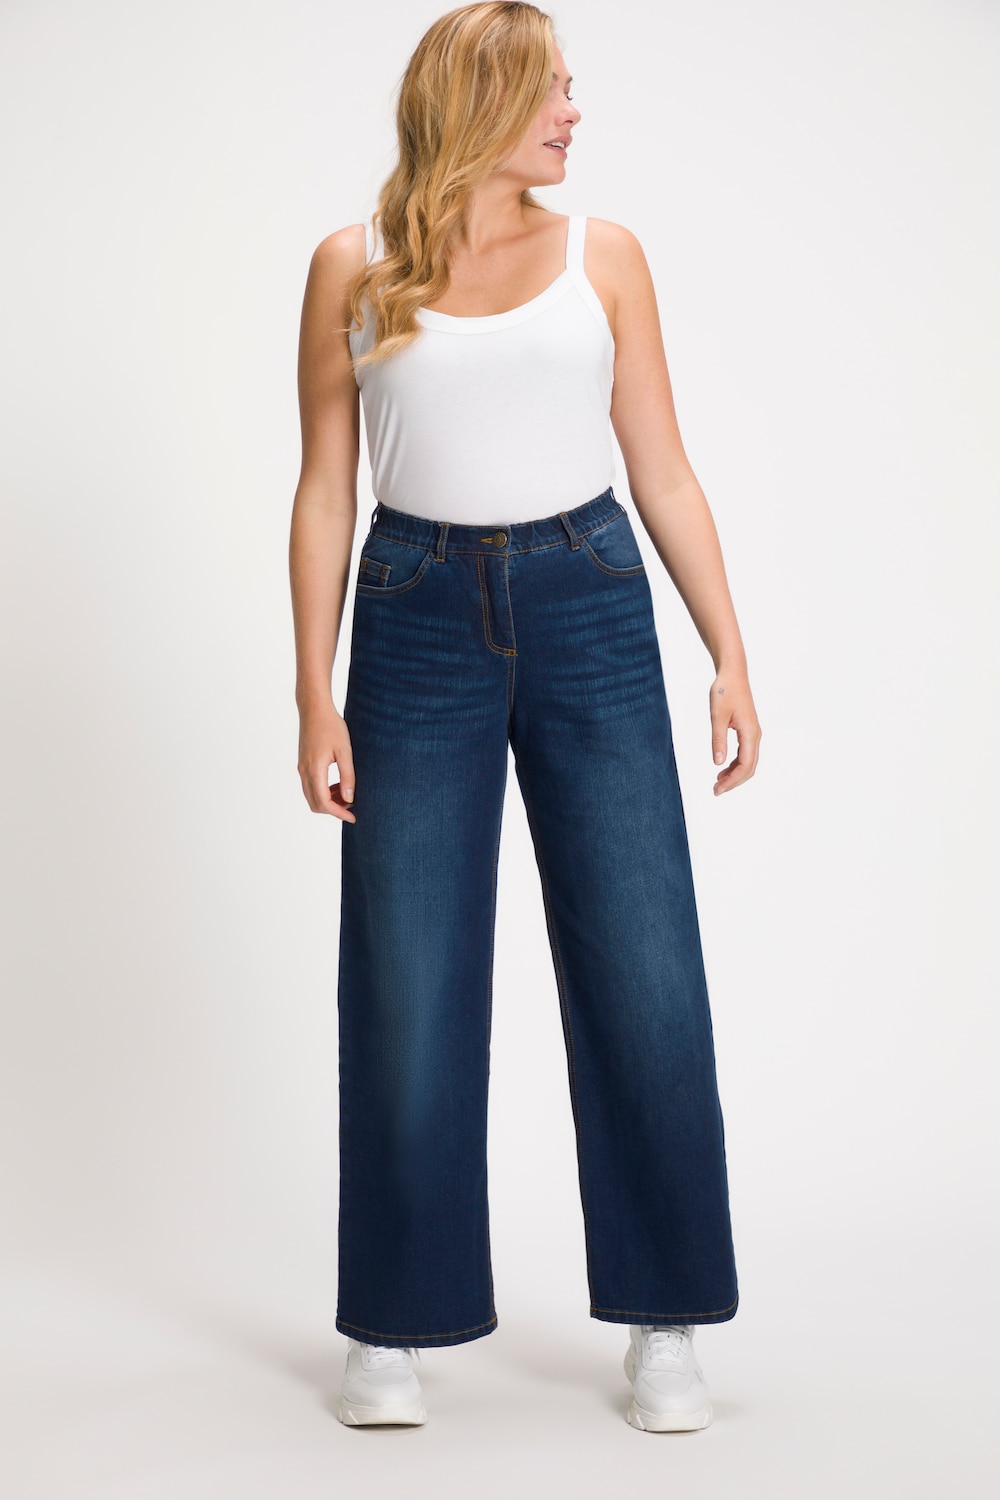 Grote Maten jeans Mary, Dames, blauw, Maat: 112, Katoen/Polyester/Viscose, Ulla Popken